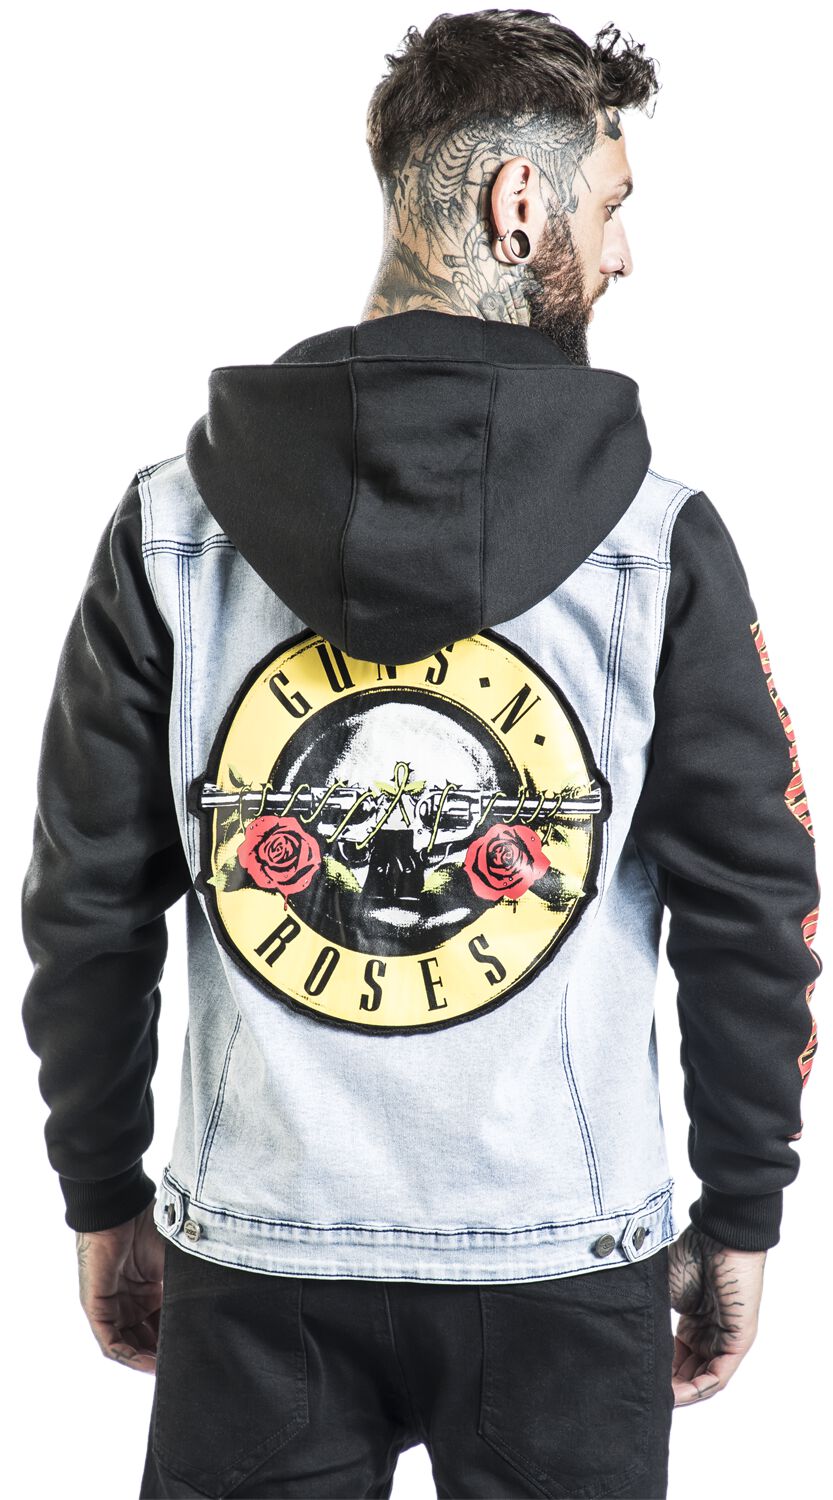 Guns N Roses Patched Denim Jacket Vintage Rock Music Band 